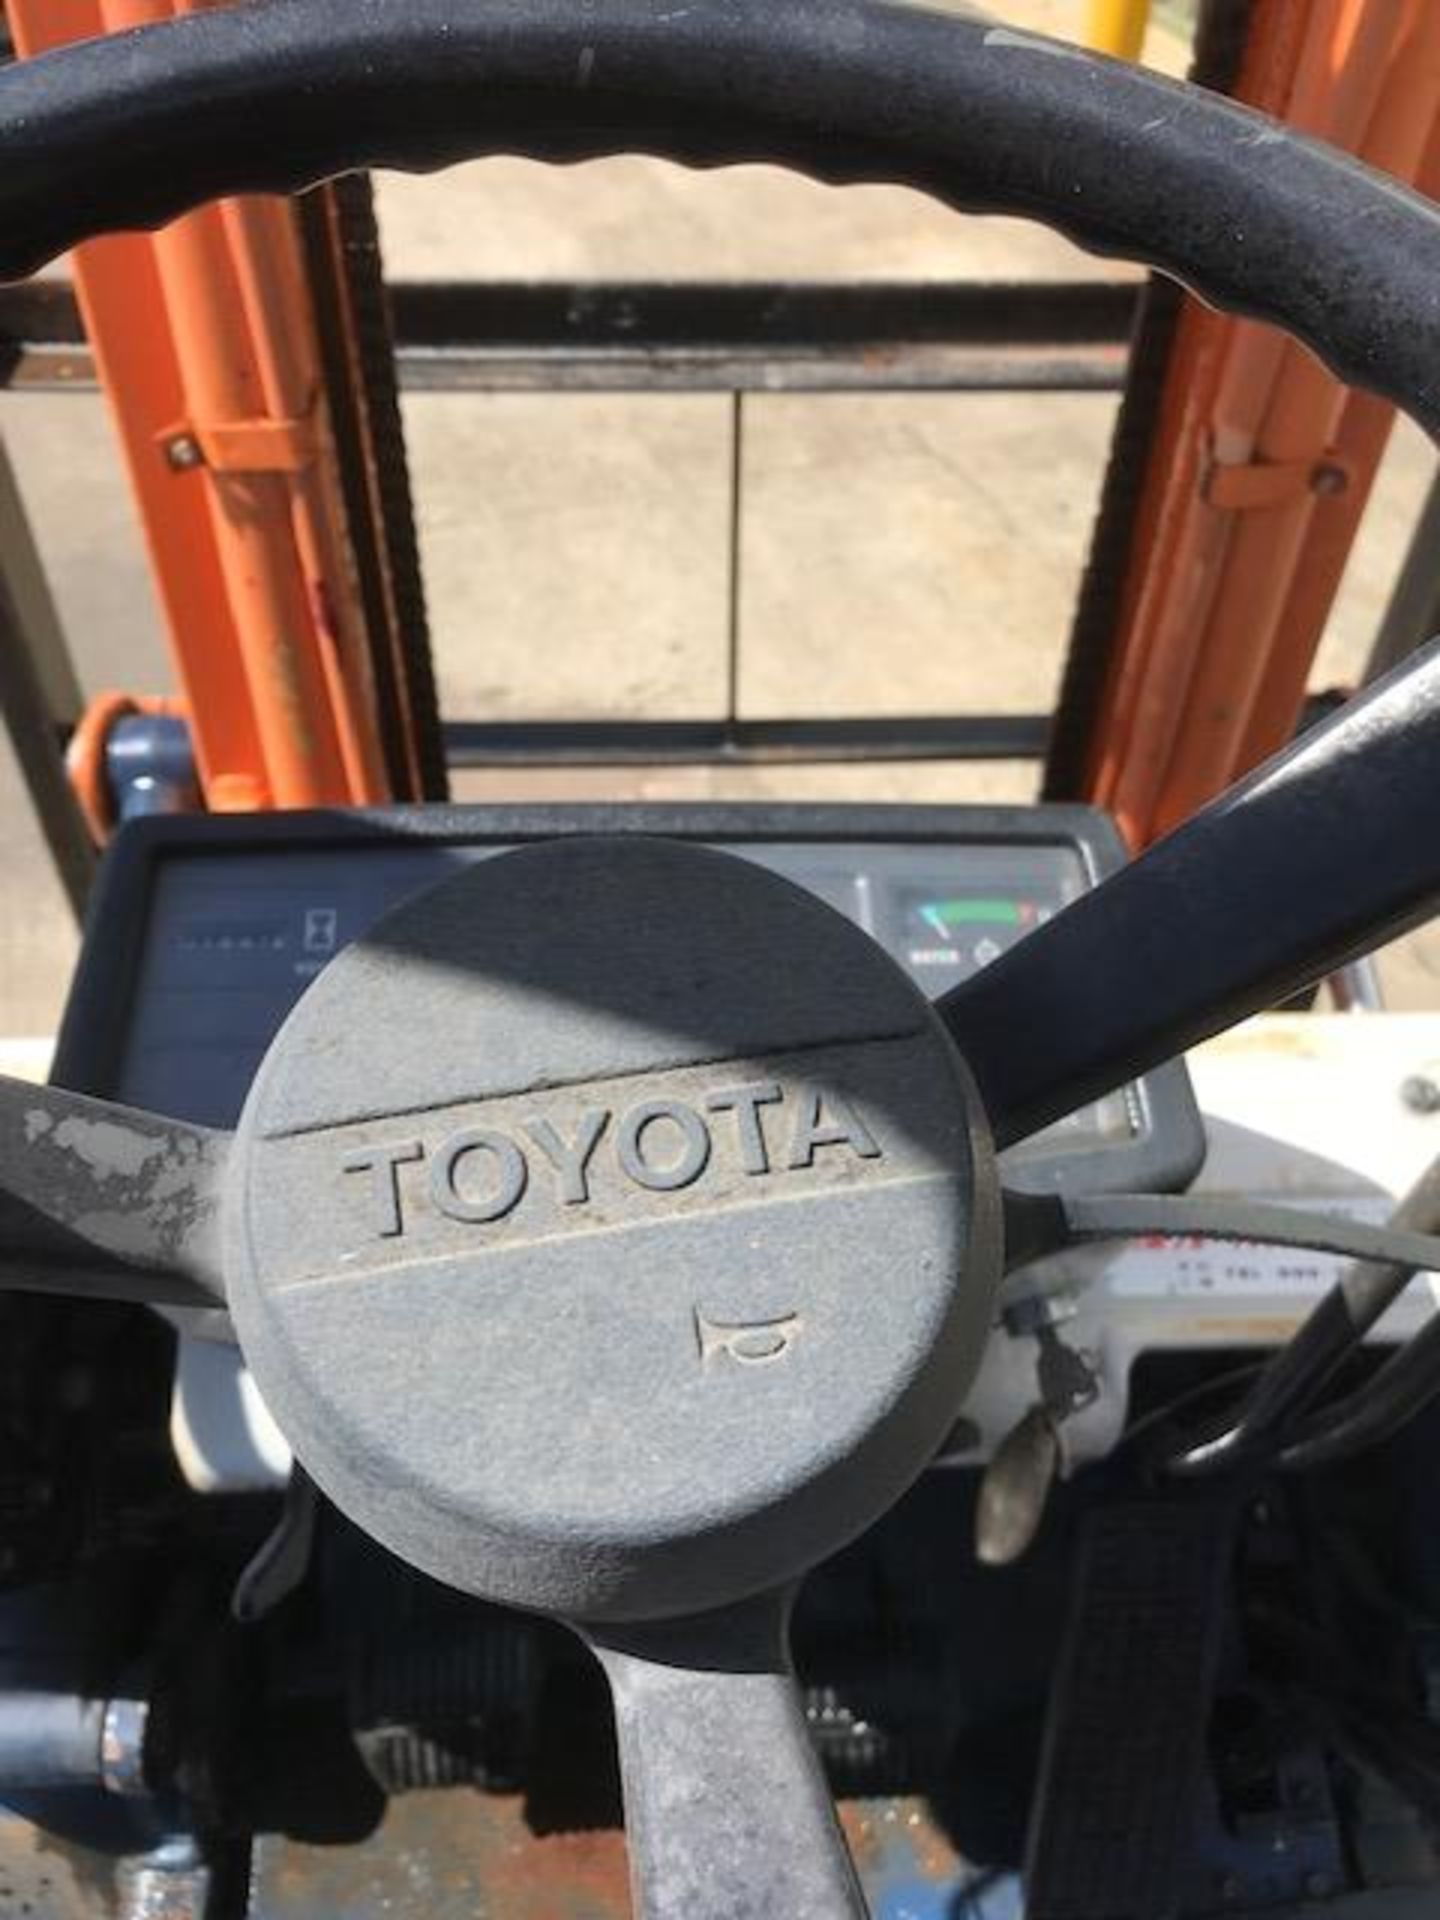 Toyota Model 5FGL15 1.5 Tonne Forklift - Image 6 of 7